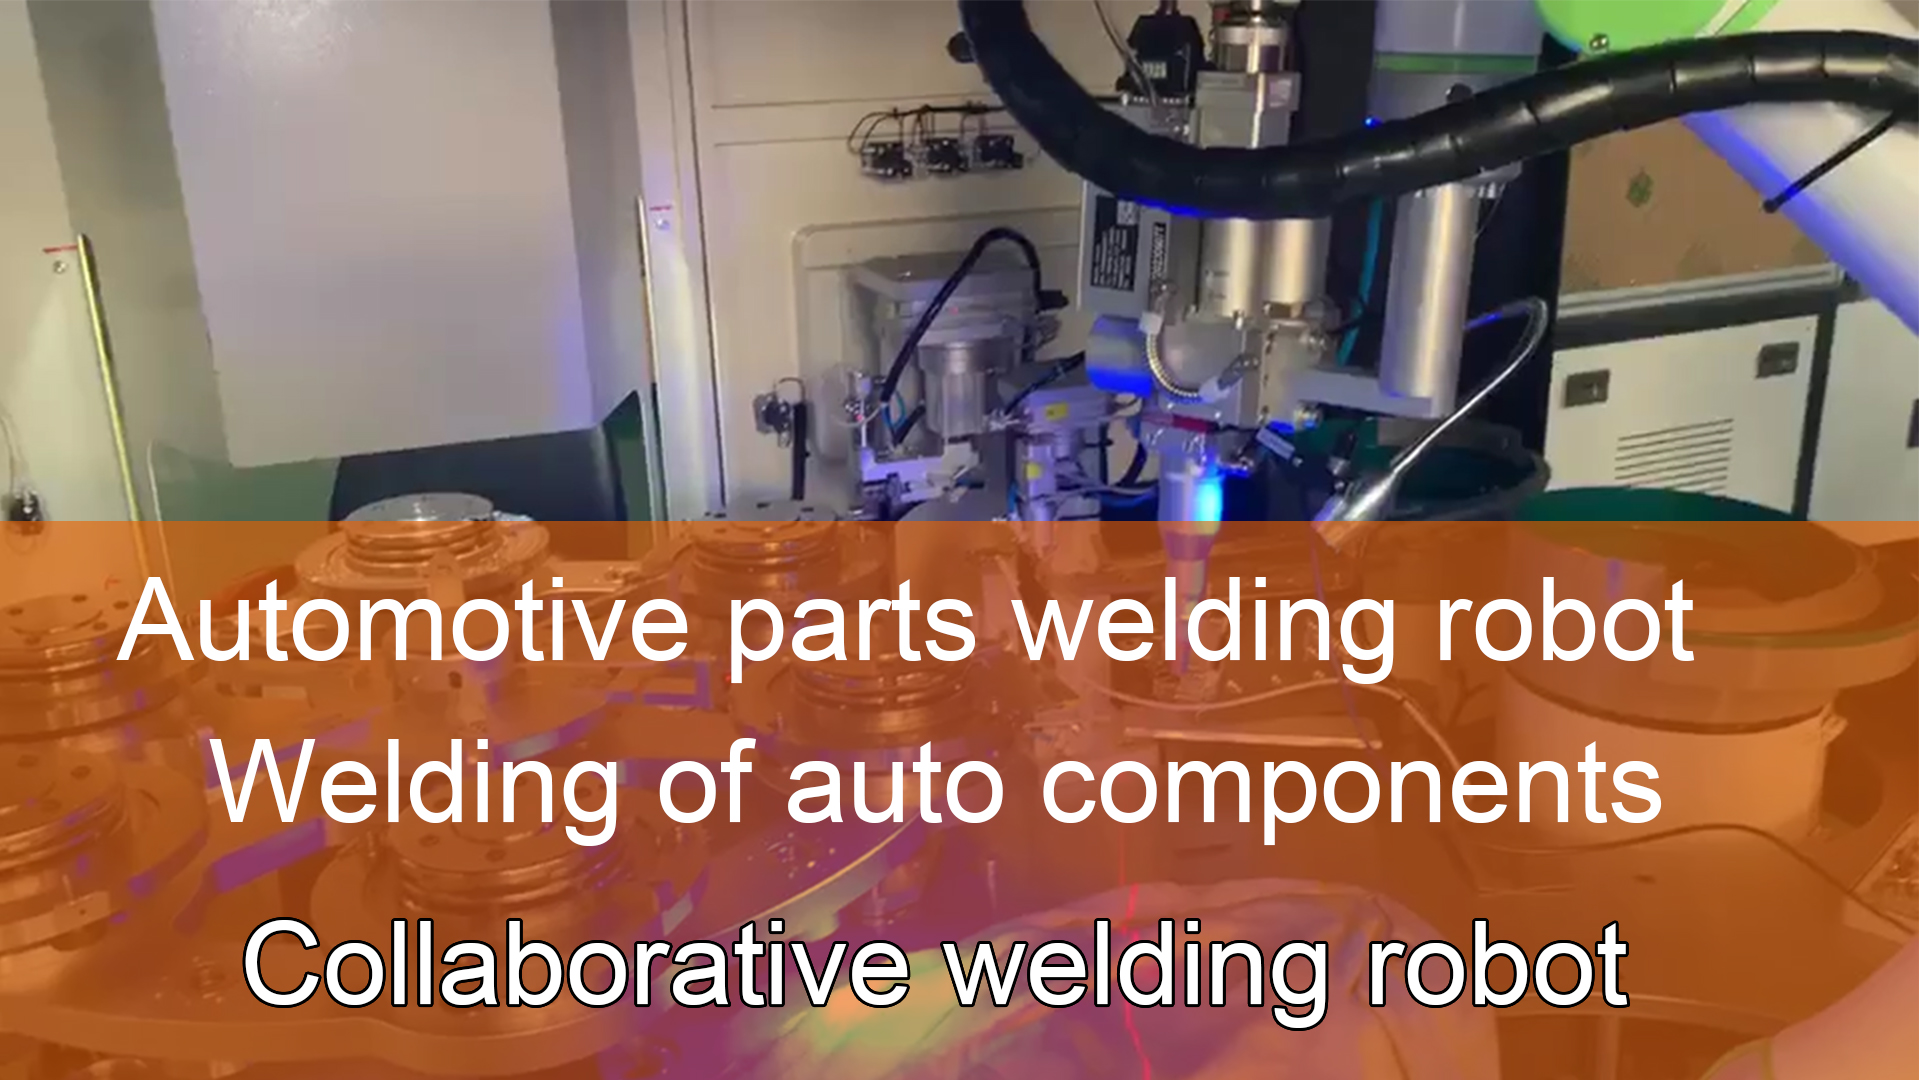 Collaborative welding robot | Welding of automotive components | Automotive parts welding robot